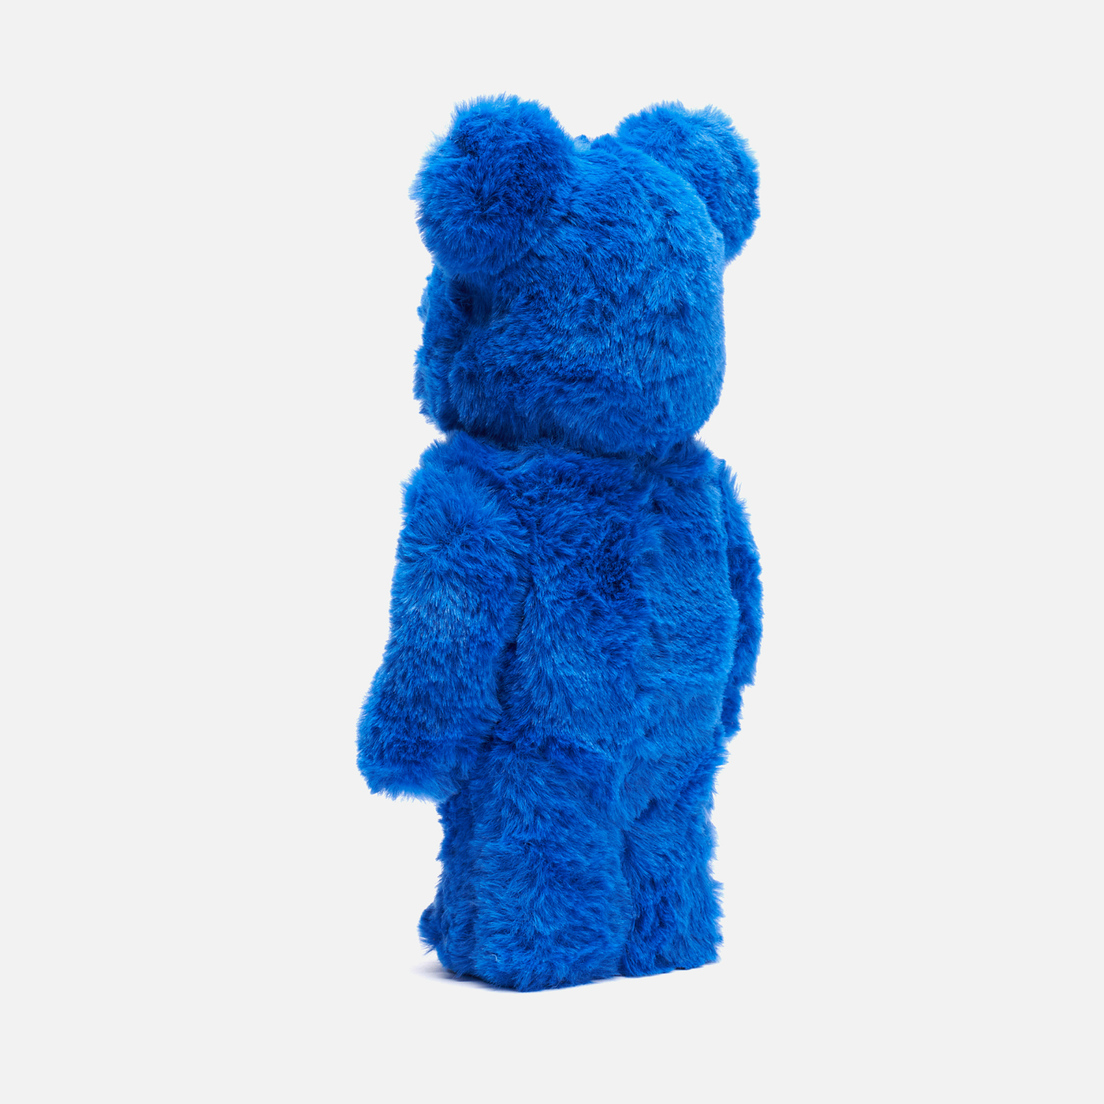 Medicom Toy Игрушка Cookie Monster Costume 400%